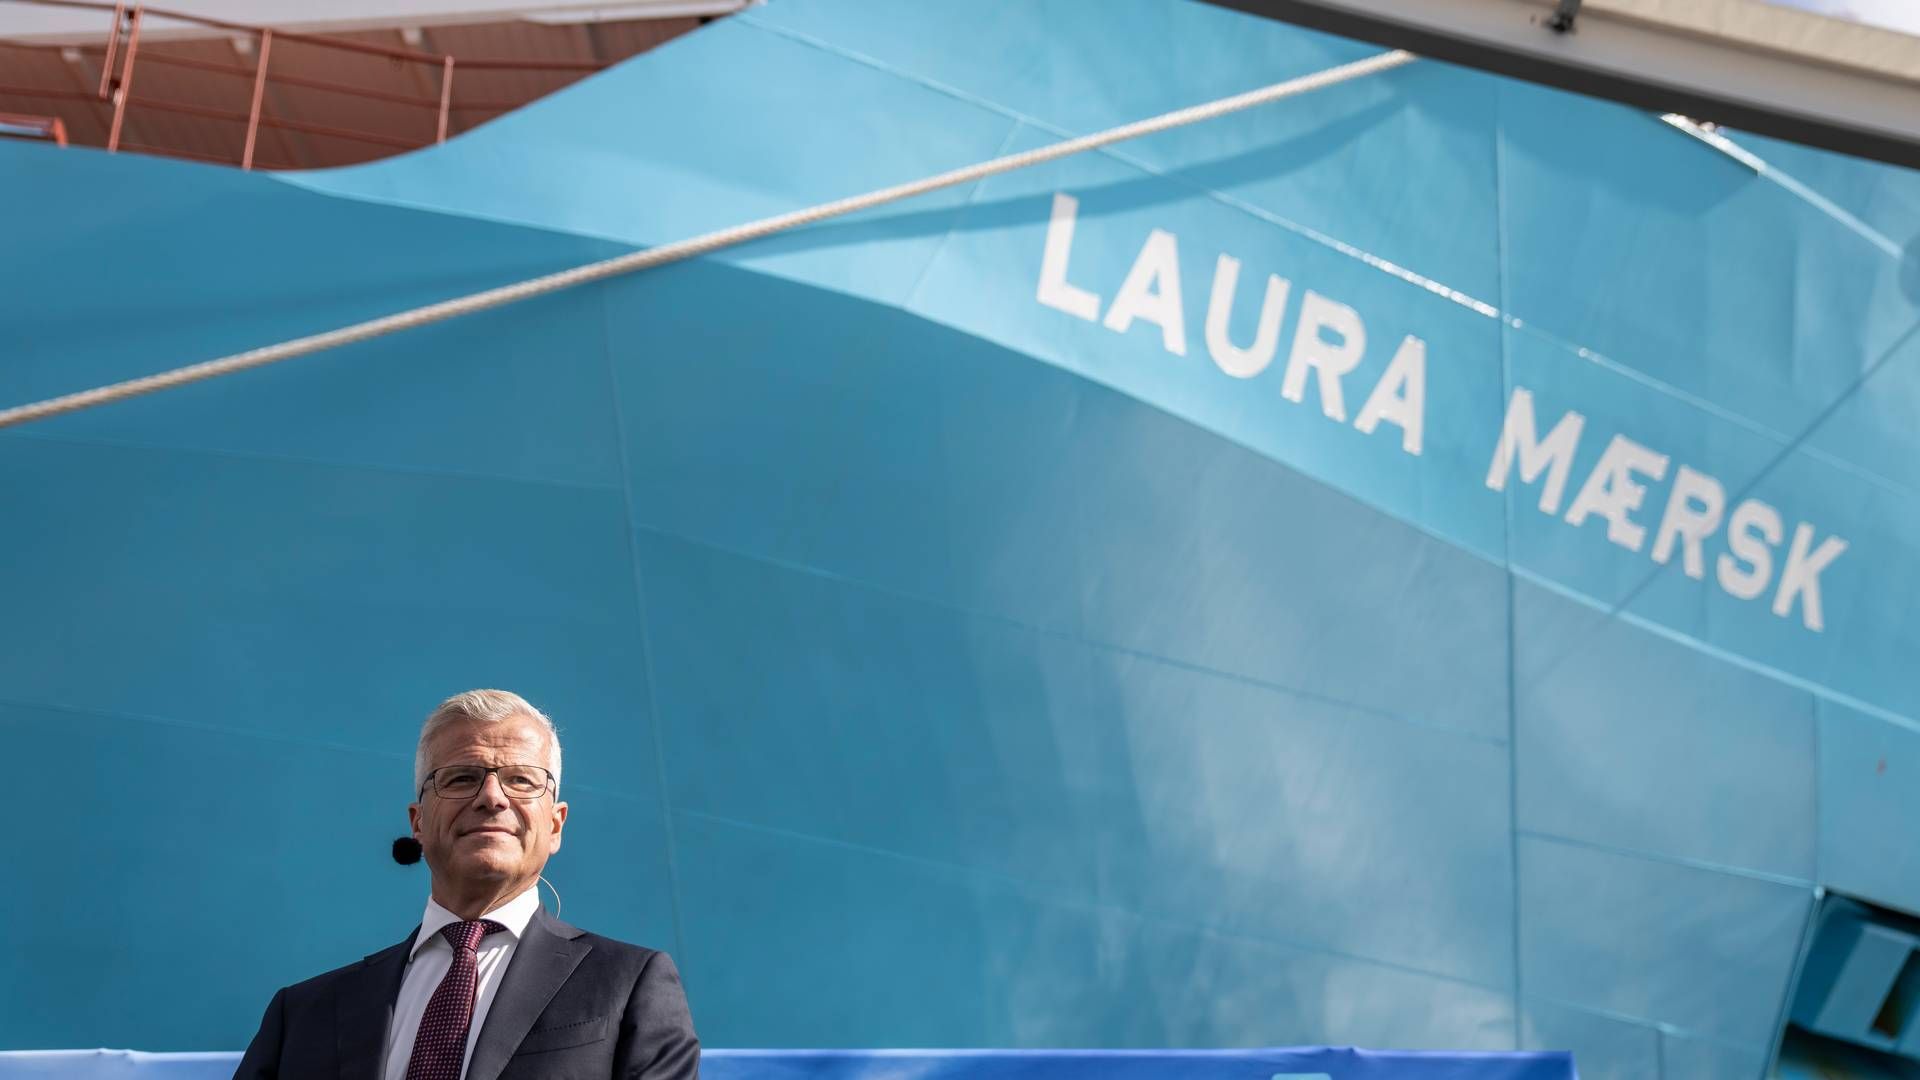 Laura Mærsk, som er verdens første containerskib, kan sejle på grøn metanol og kan derfor finansieres af grønne obligationer. Vincent Clerc, CEO i Mærsk, taler ved navngivningen. | Foto: Mads Claus Rasmussen